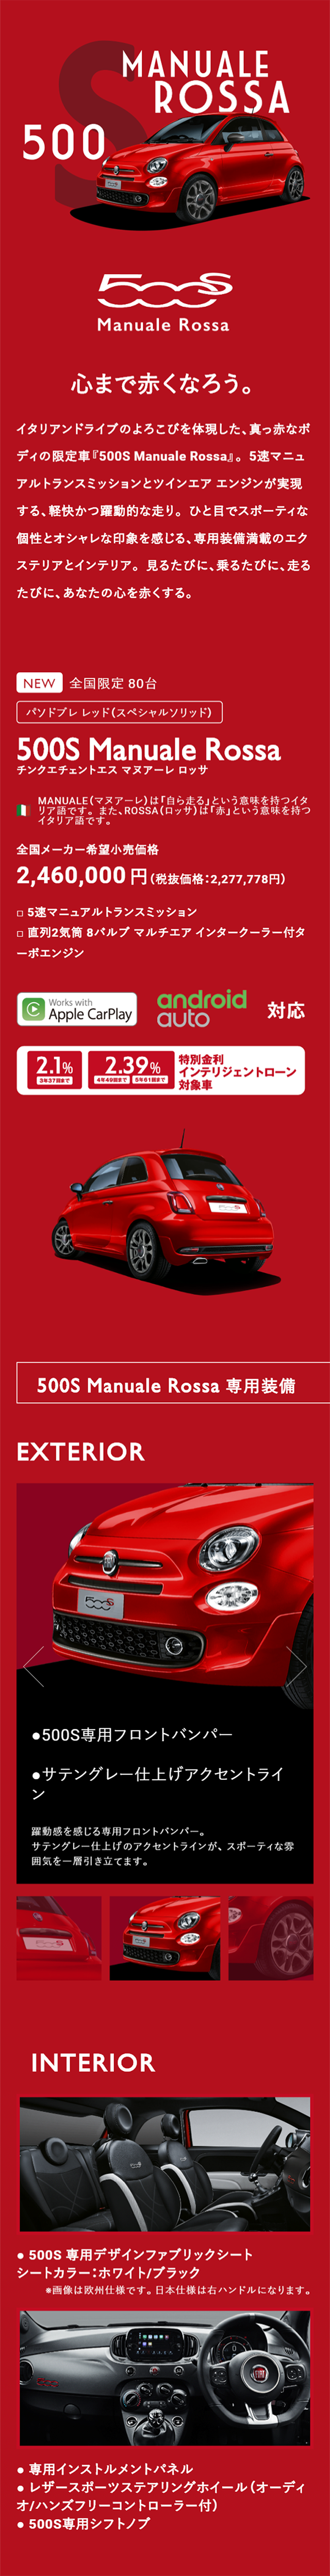 500S Manuale Rossa_sp_1